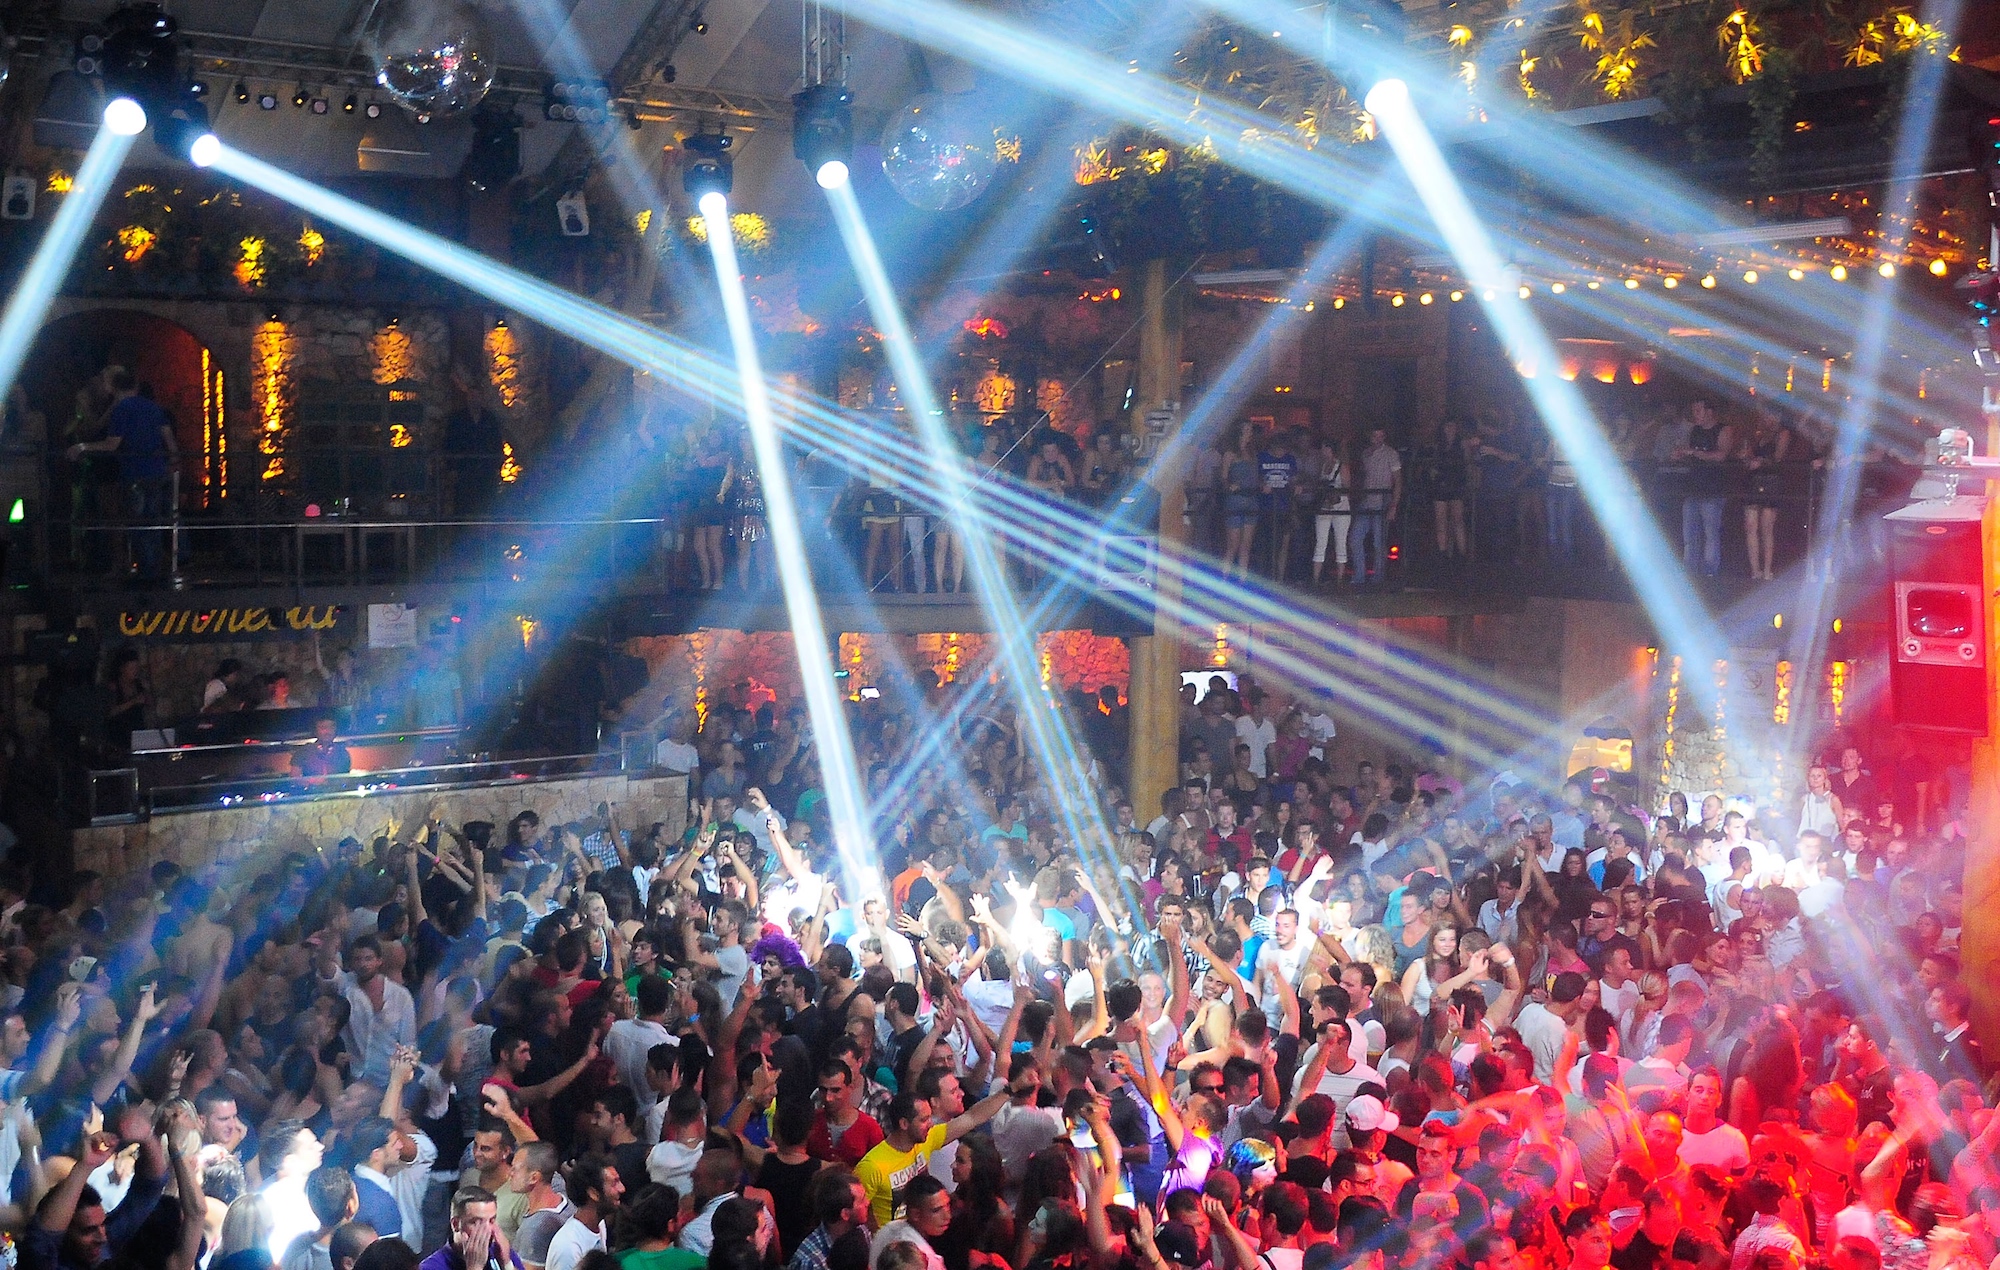 Ibiza confirma que las discotecas pueden abrir en abril